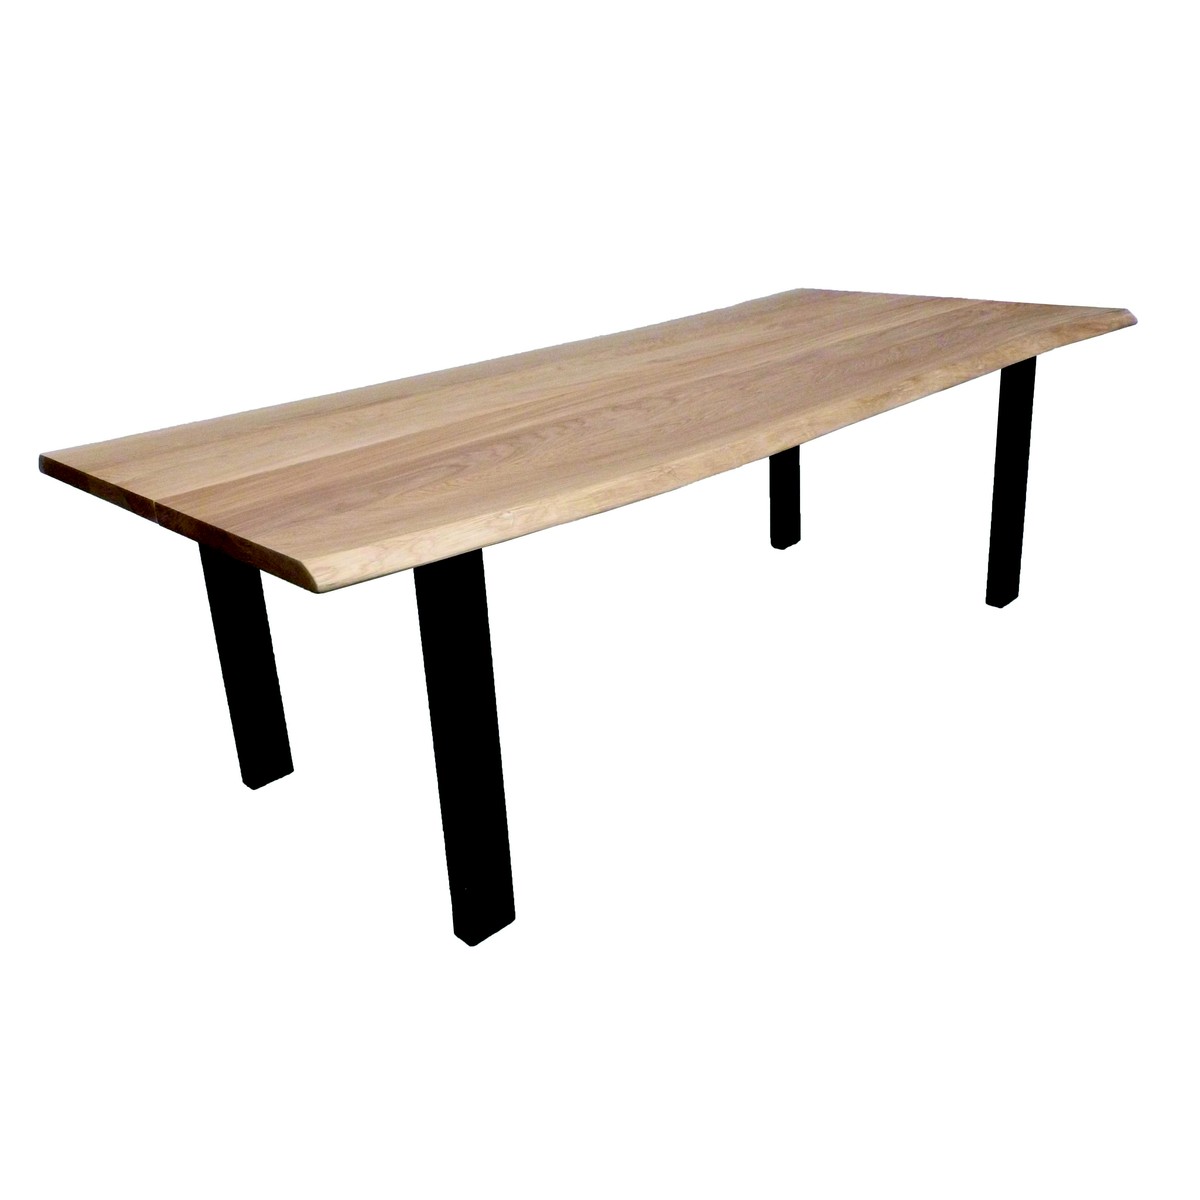   Table haute Ludo Trunk ouverte rectangulaire  160x100x90cm